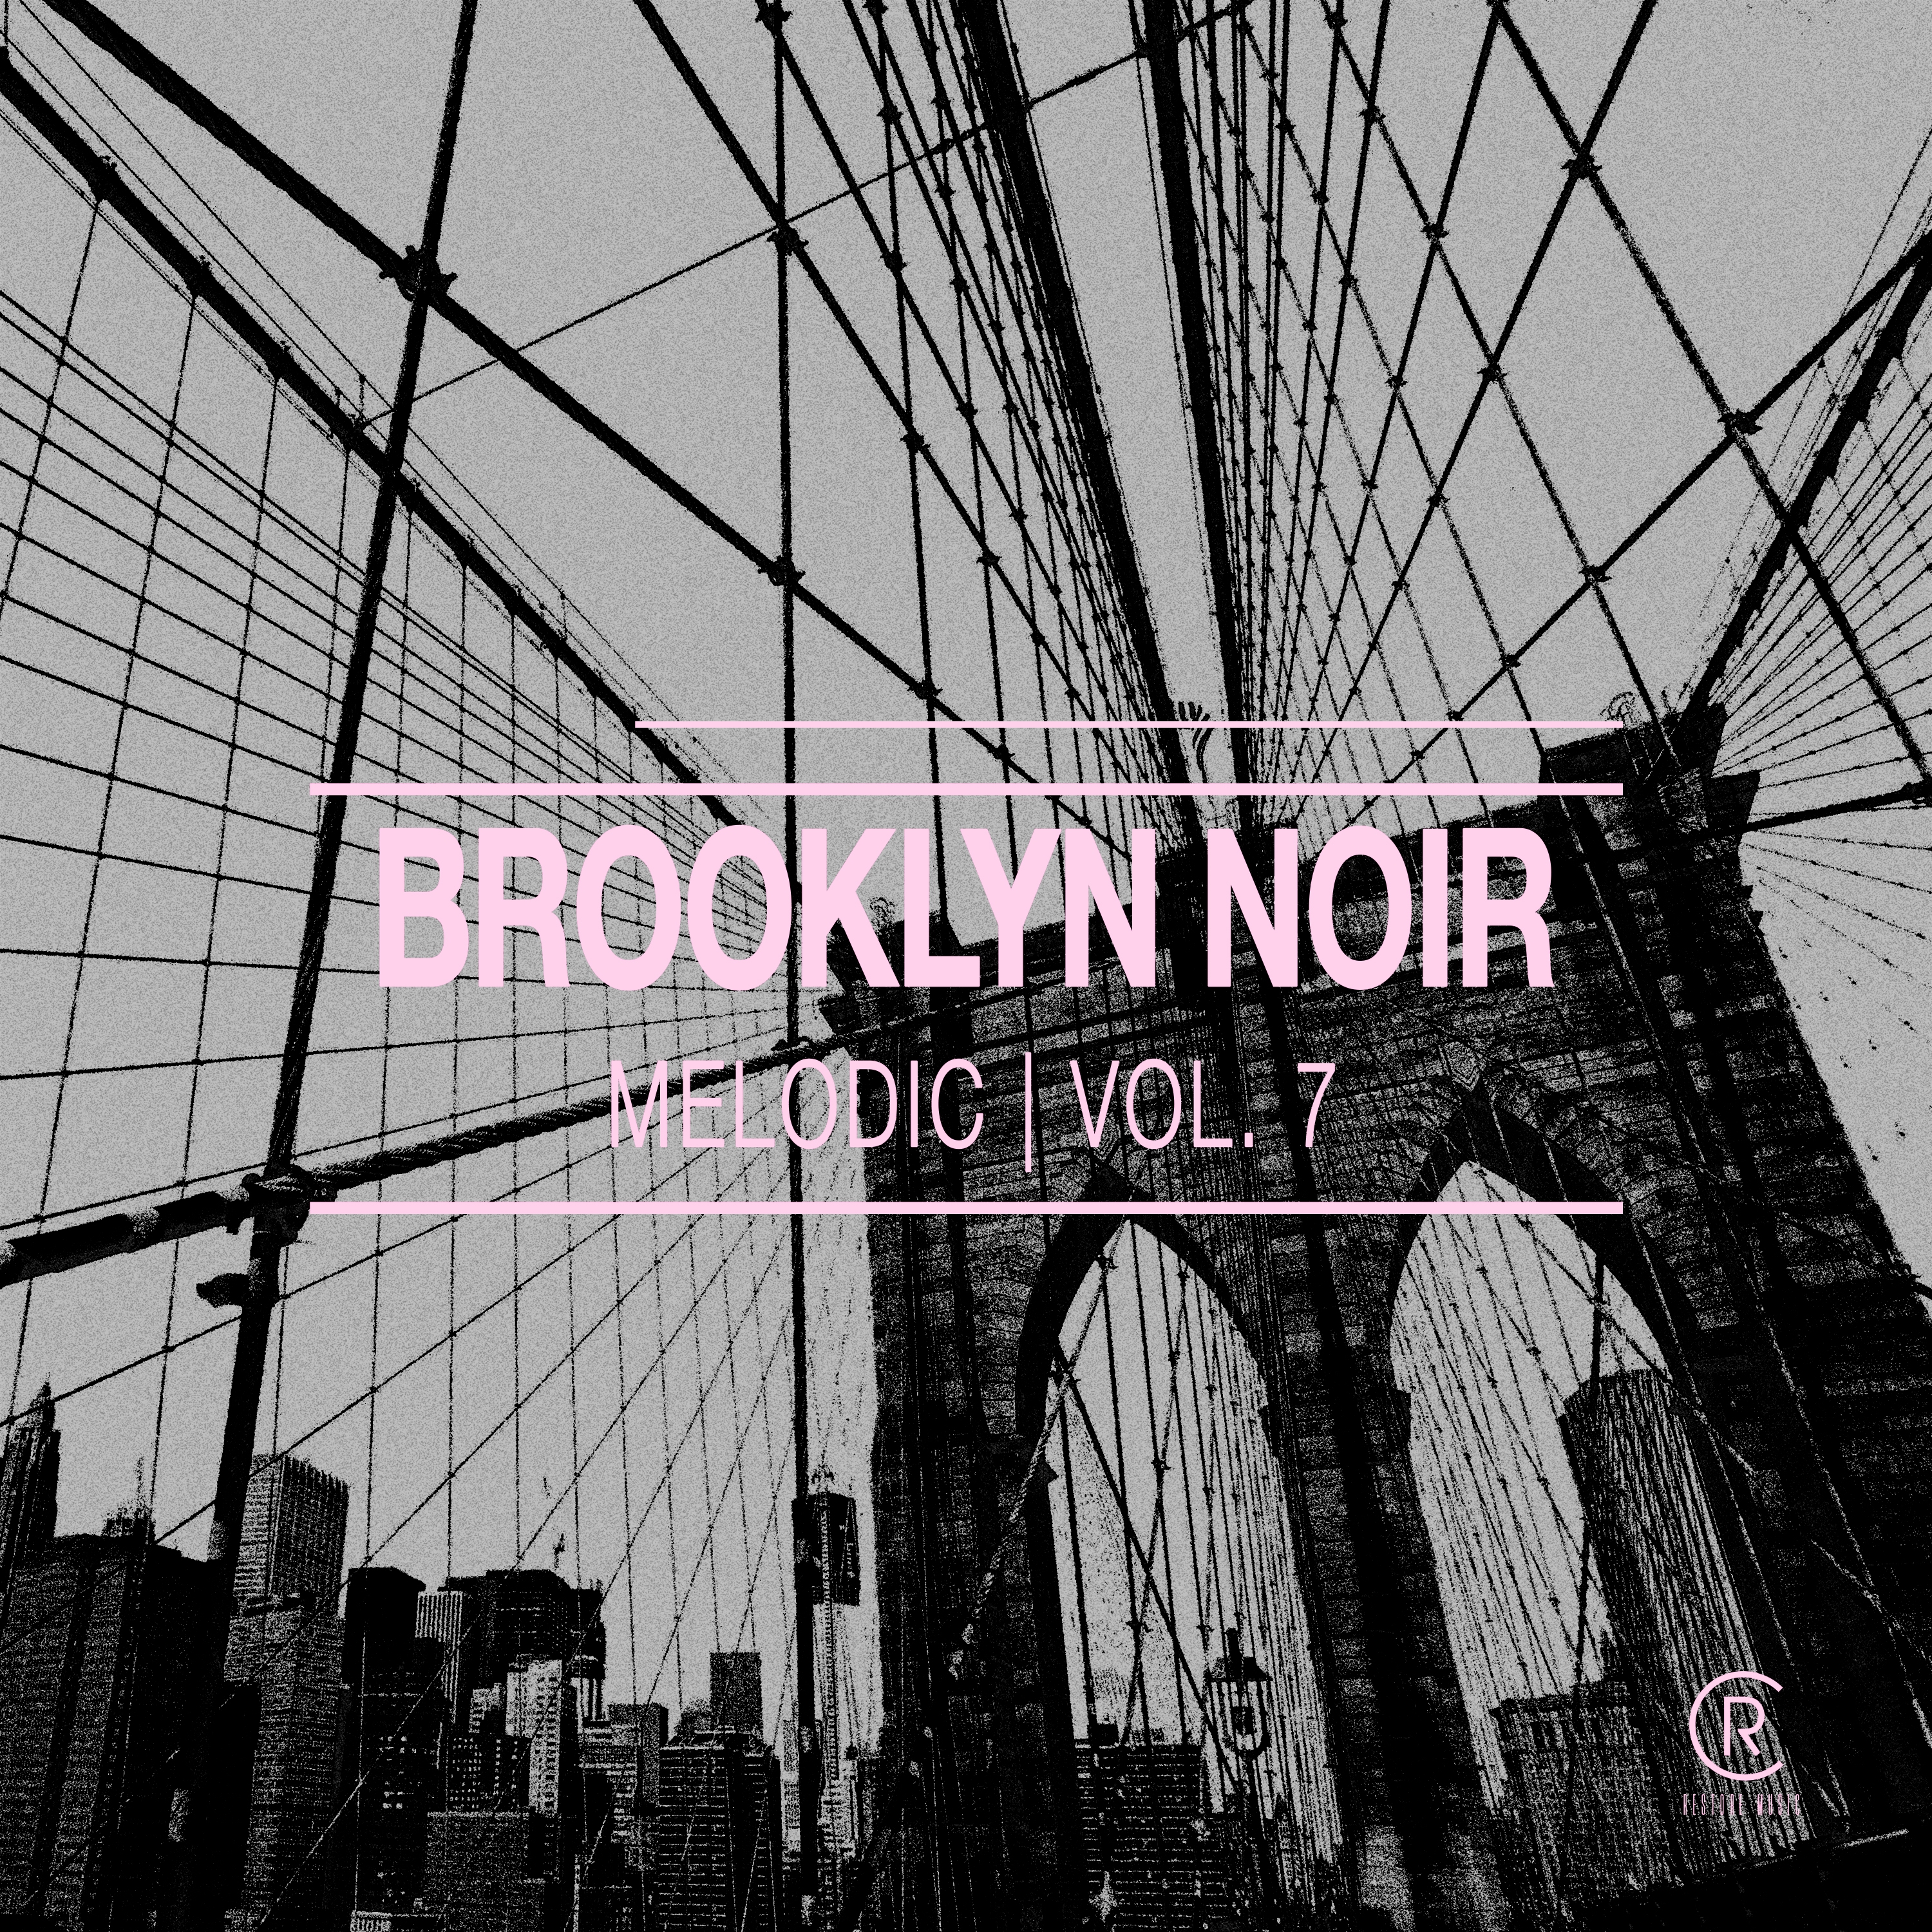 Brooklyn Noir Melodic, Vol. 7